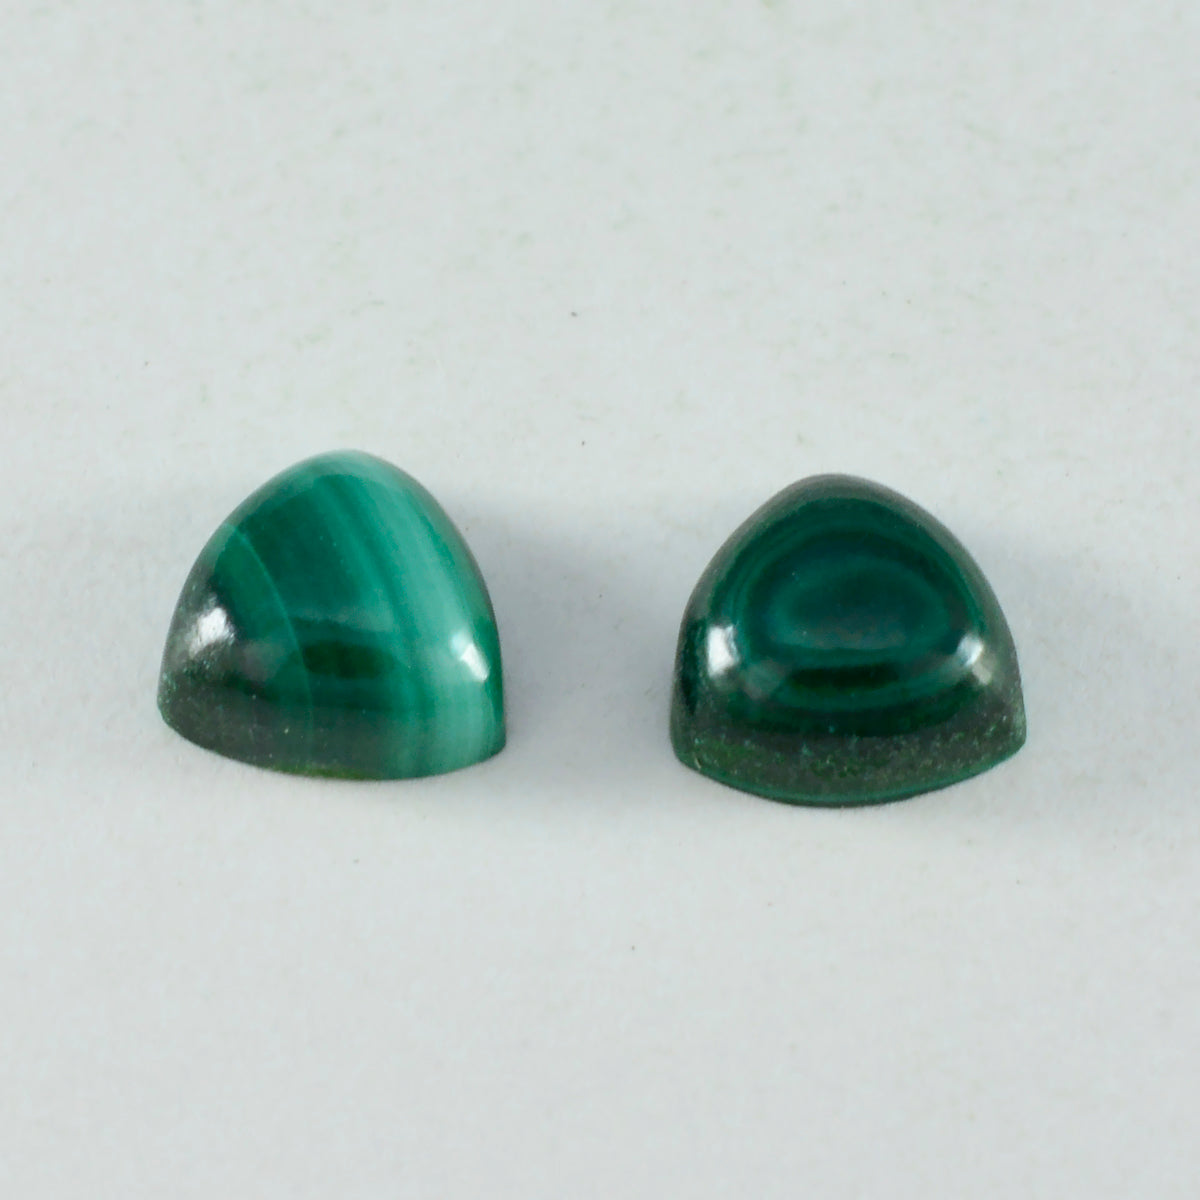 Riyogems 1 Stück grüner Malachit-Cabochon, 8 x 8 mm, Billionenform, hübscher, hochwertiger loser Stein